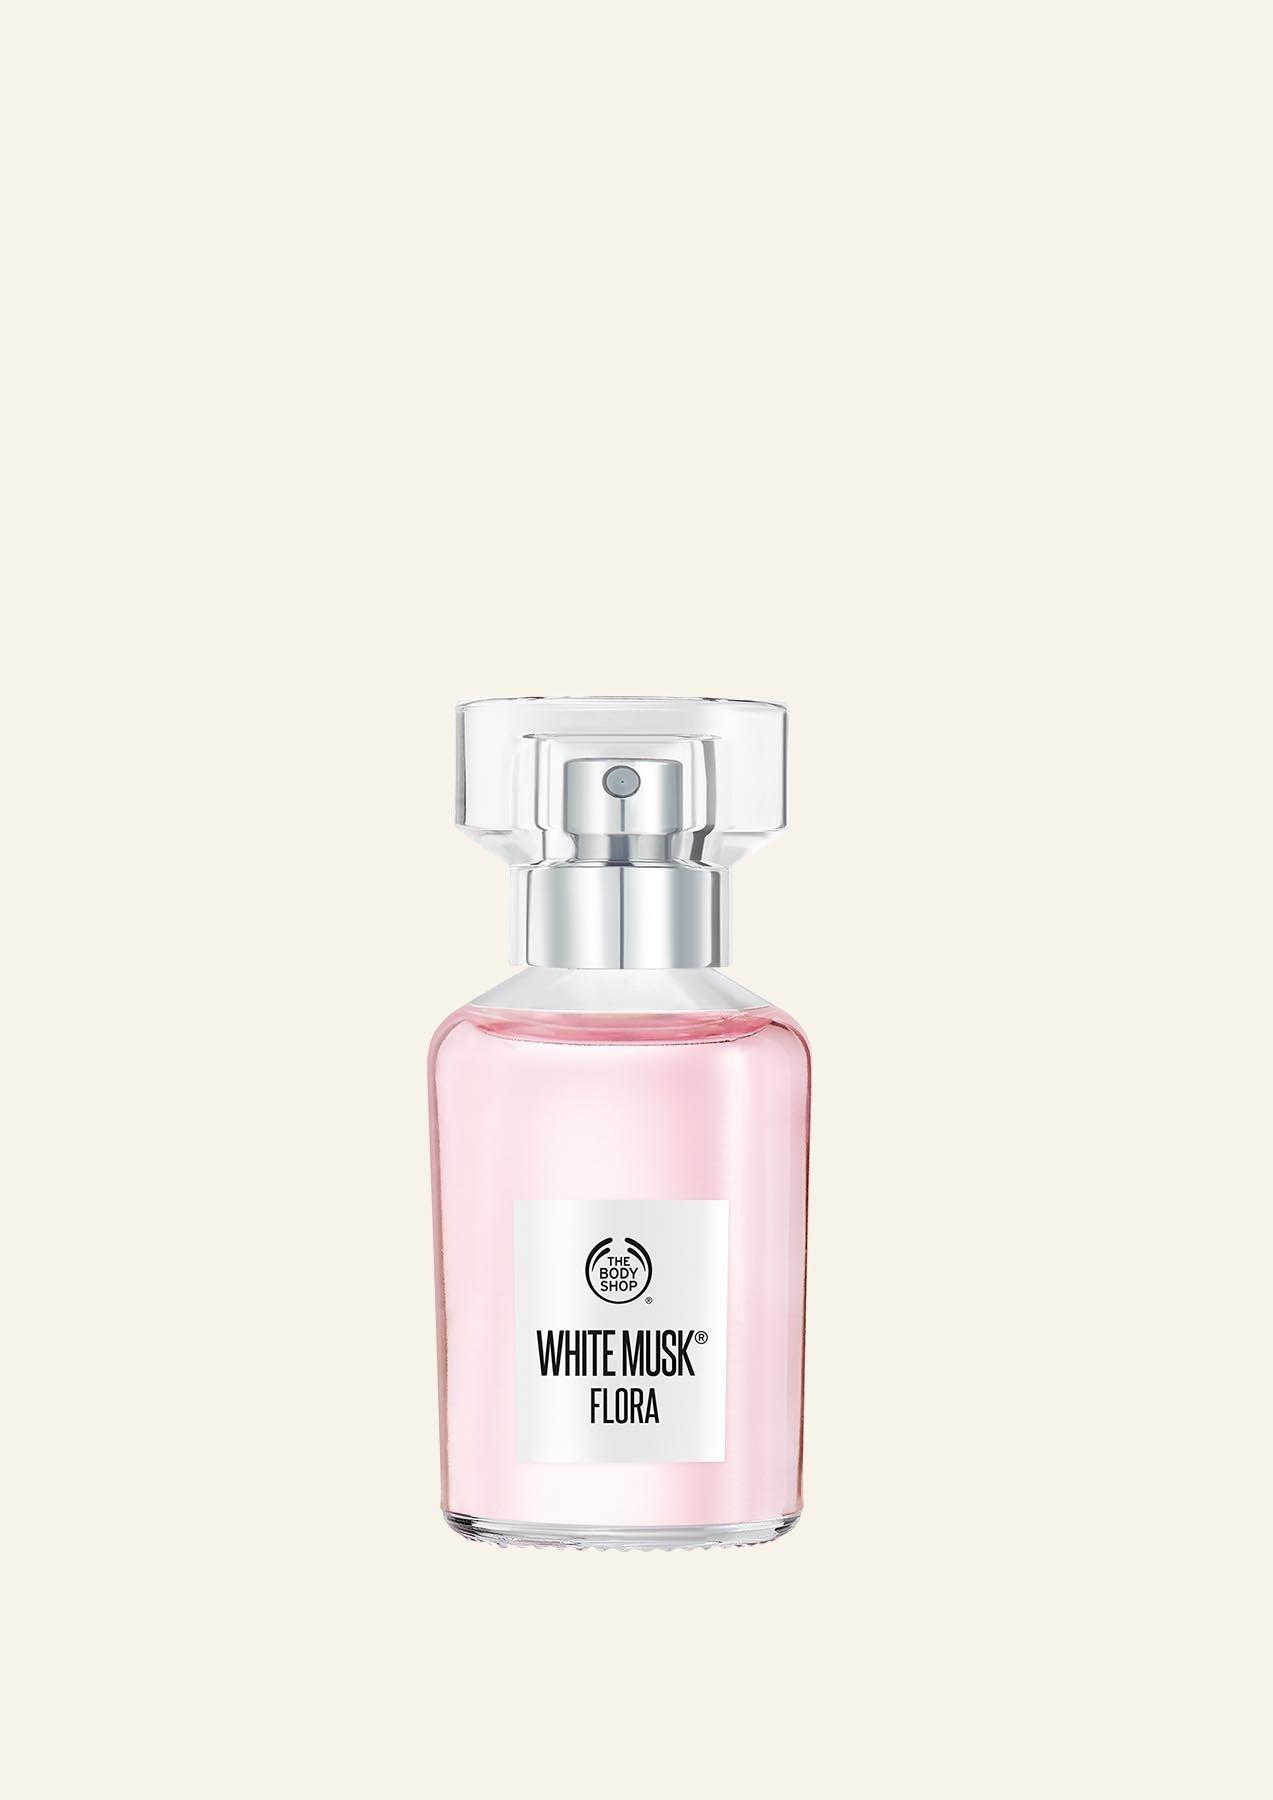 White Musk® Flora Eau De Toilette | Parfum | The Body Shop®